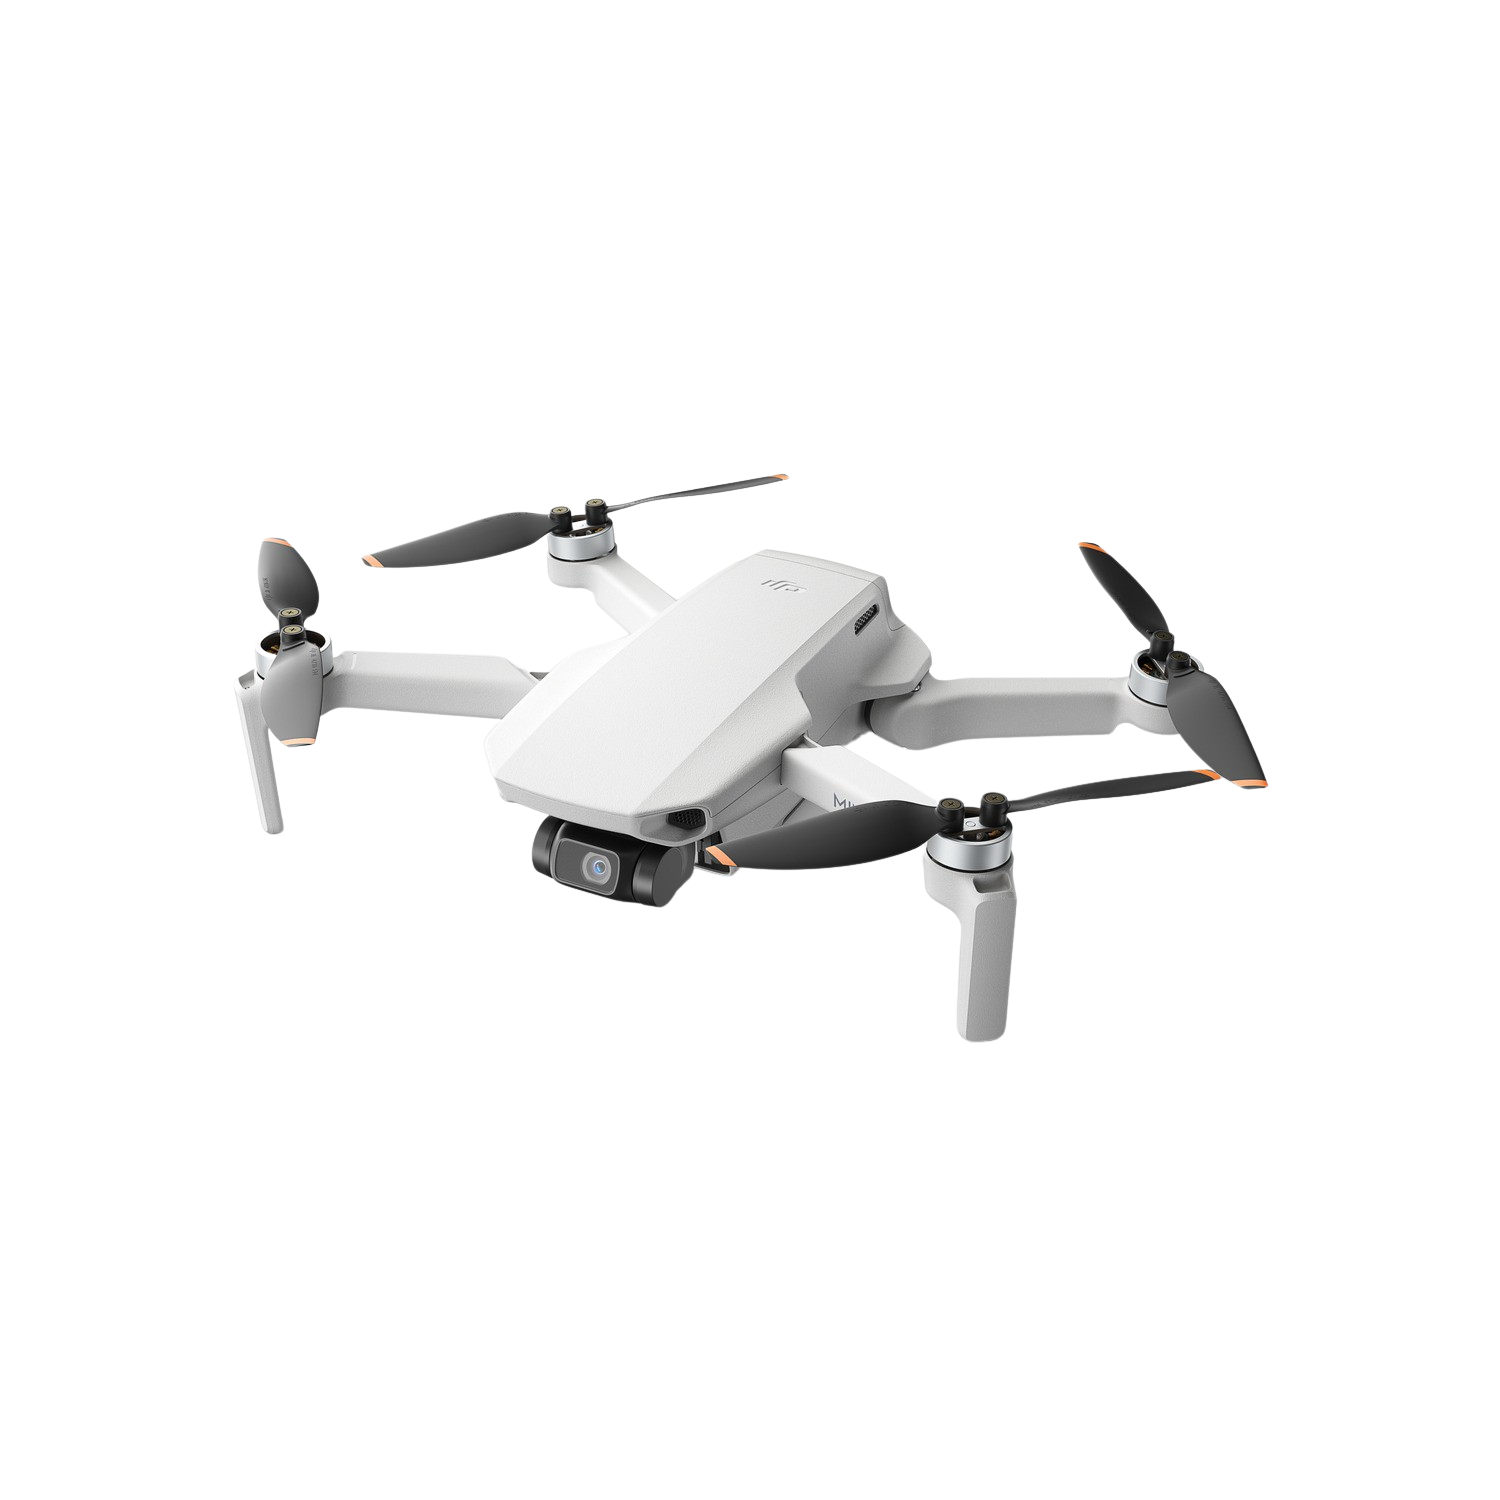 Dron Dji Mini se 12 mp vídeo 2.7k wifi 12.3” cmos hasta 30 2600 mah altitud 3 km blanco con estabilizador en ejes gps tiempo vuelo peso reducido menos 249 g0.55 5